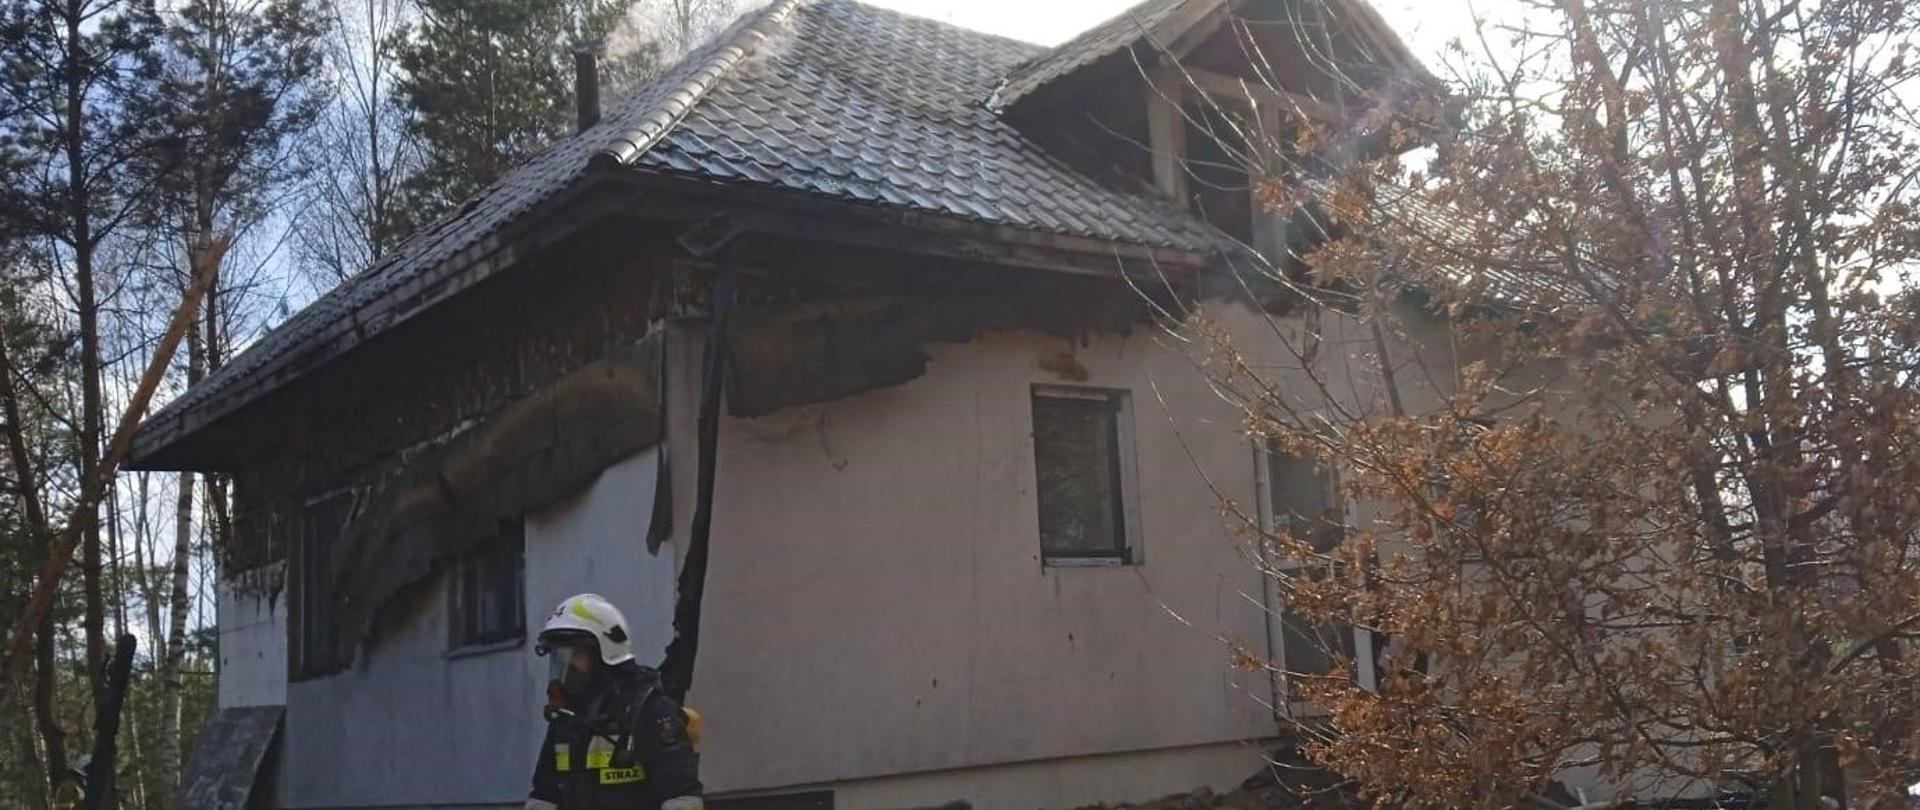 Zdjęcie przedstawia jednorodzinny budynek mieszkalny w którym wybuchł pożar . Elewacja stopiła się a pokrycie dachowe zdeformowało z powodu zniszczenia więźby.